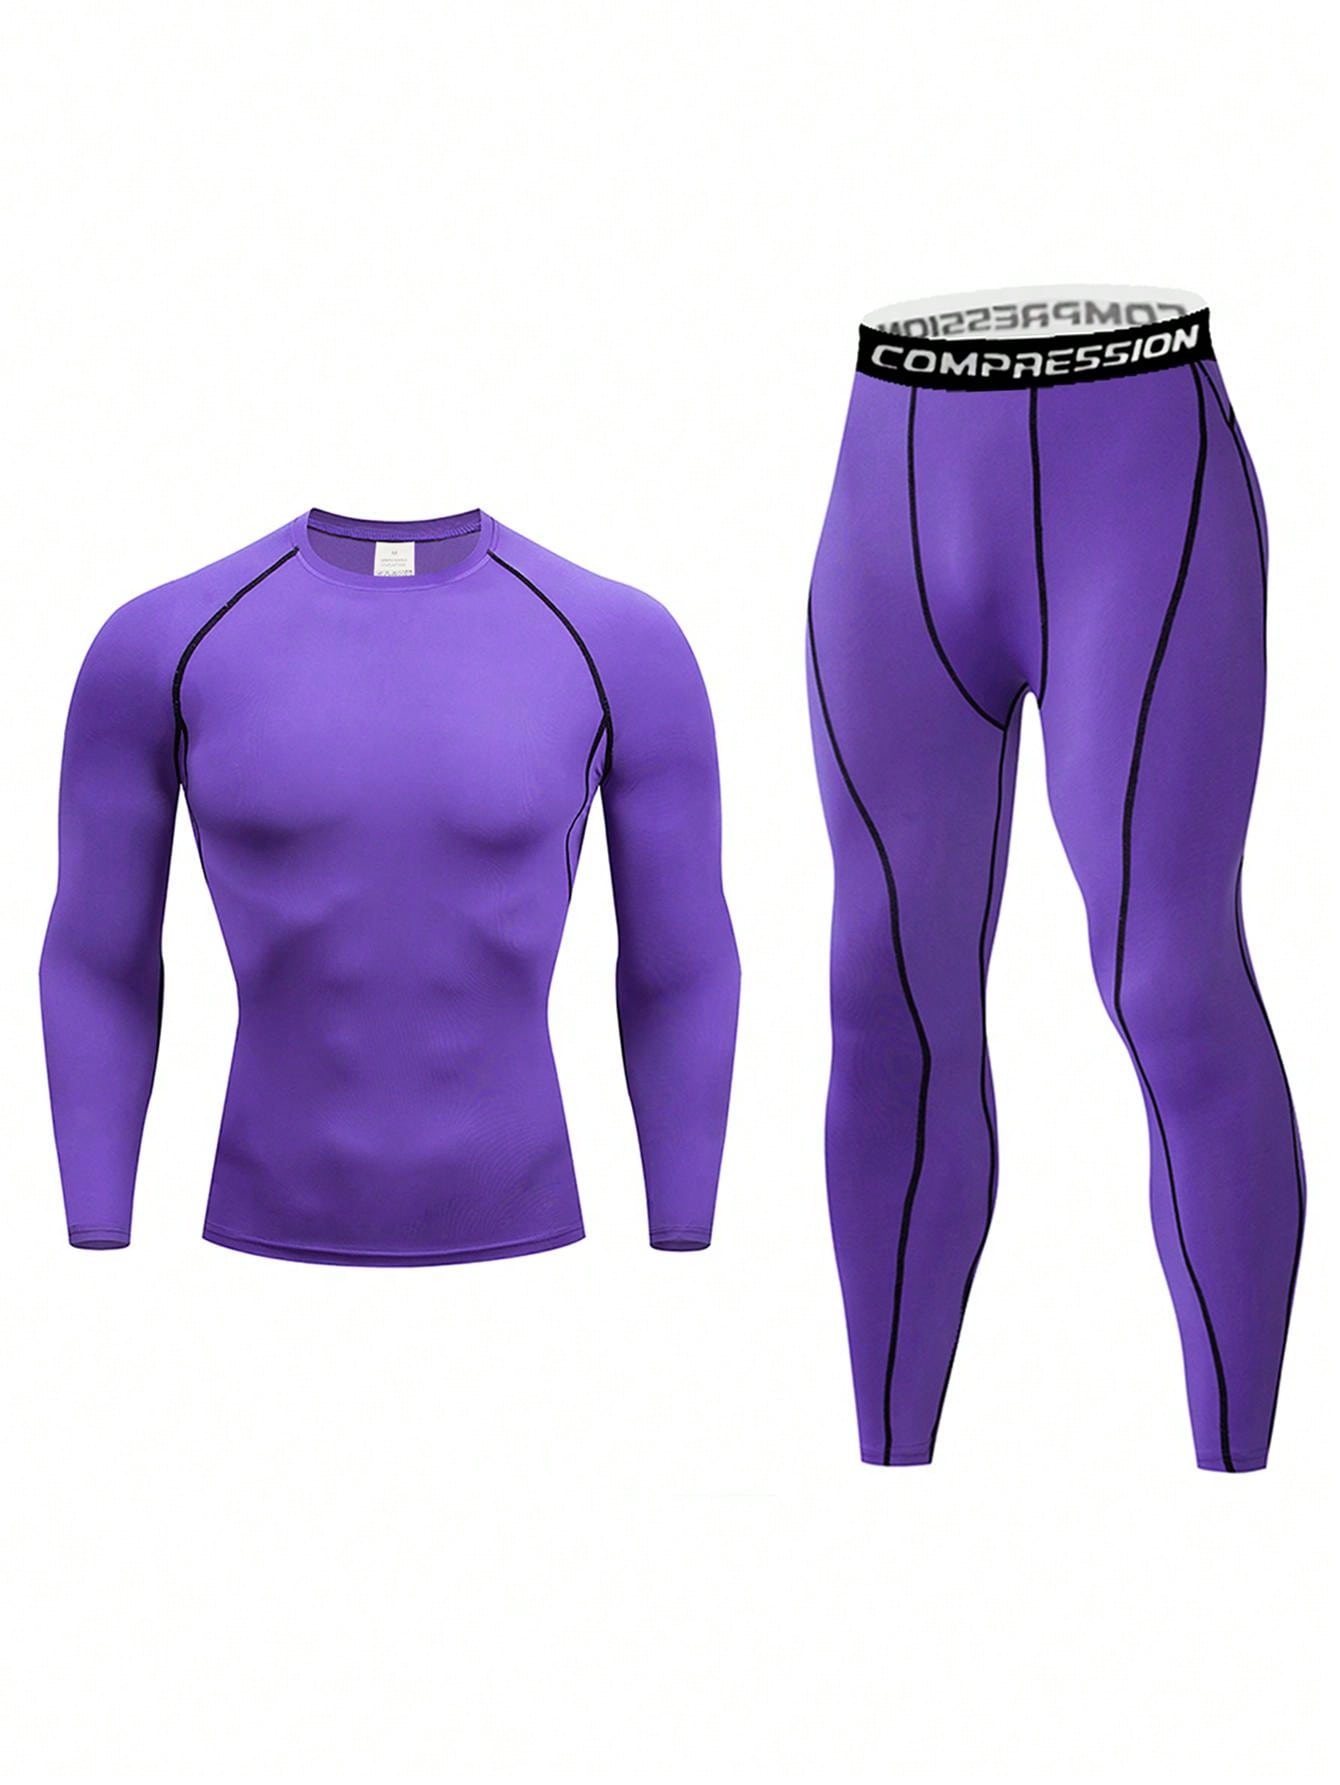 Мужской компрессионный топ с длинными рукавами и длинные брюки для фитнеса и бега, фиолетовый мужской компрессионный топ с длинными рукавами и длинные брюки для фитнеса и бега белый